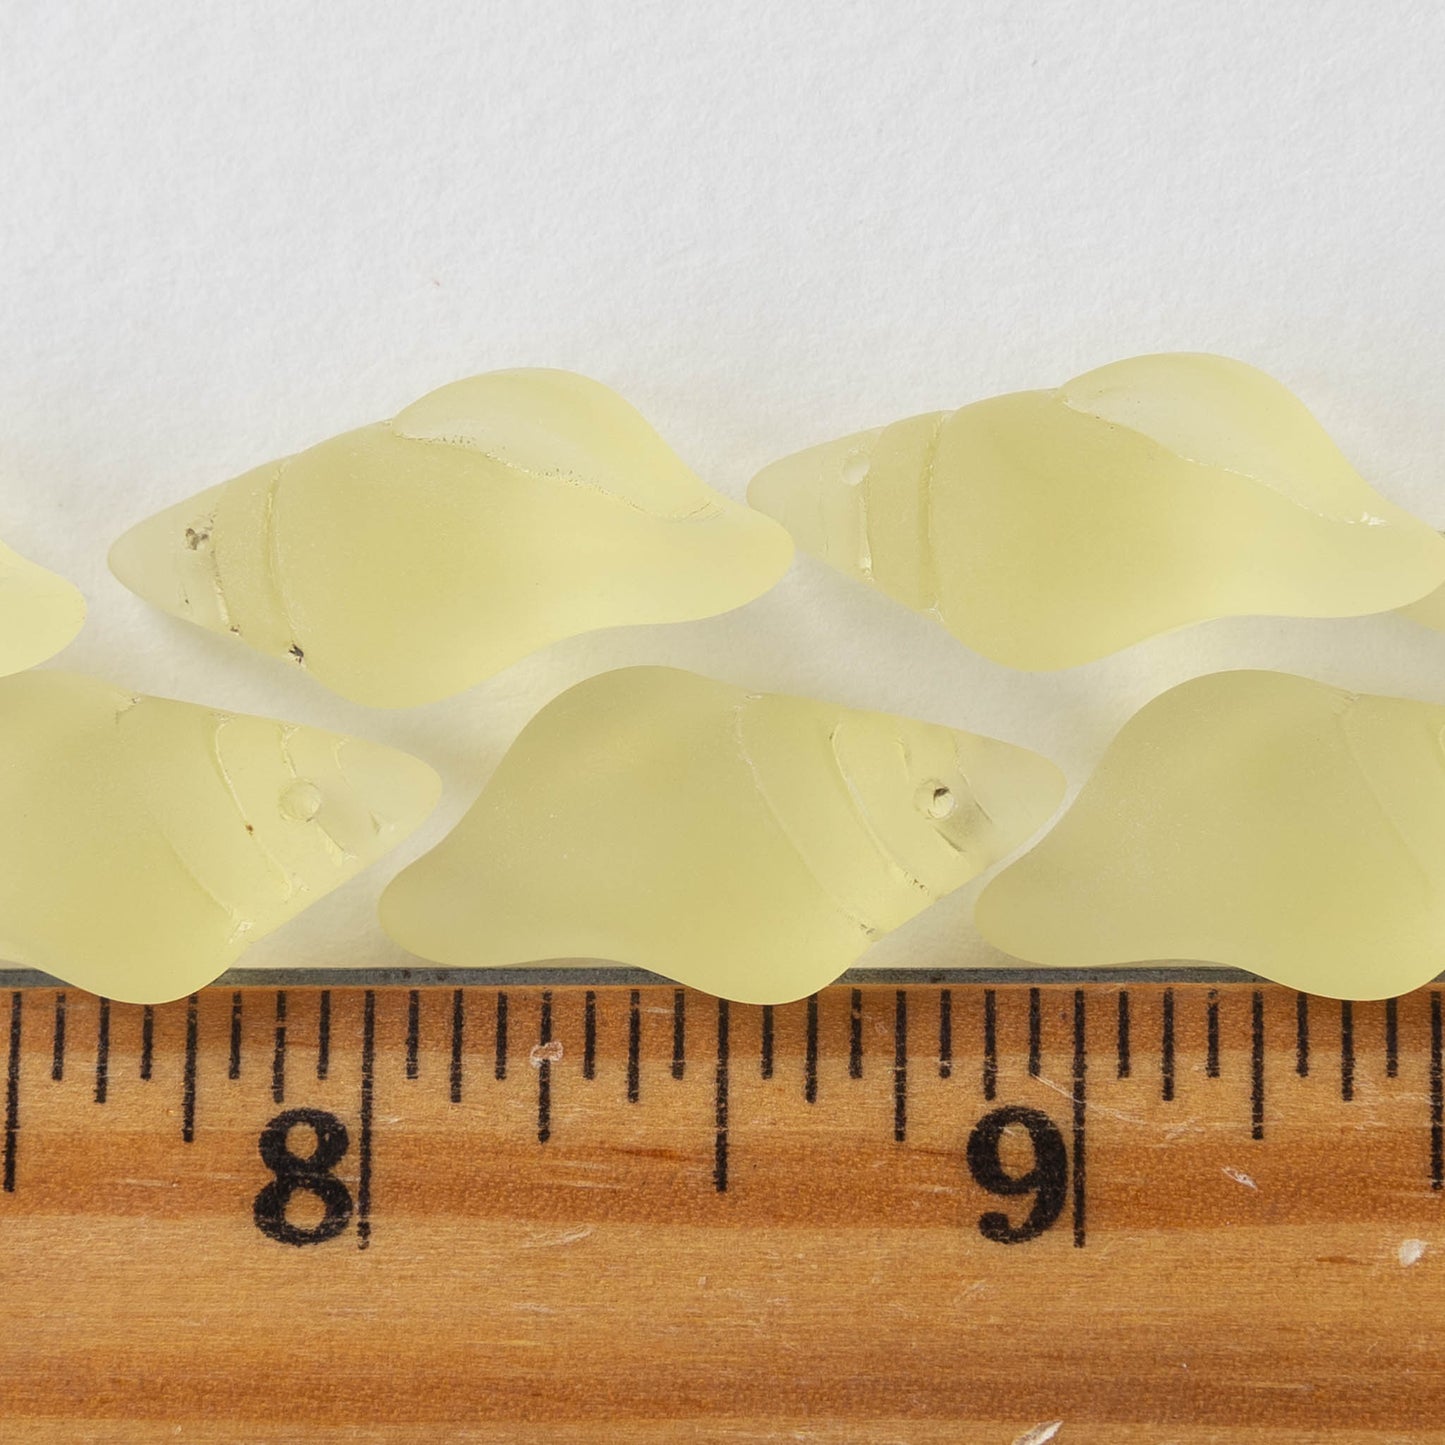 12x26mm Frosted Glass Conch Shell Beads - Lemon Chiffon Yellow - 2 Beads